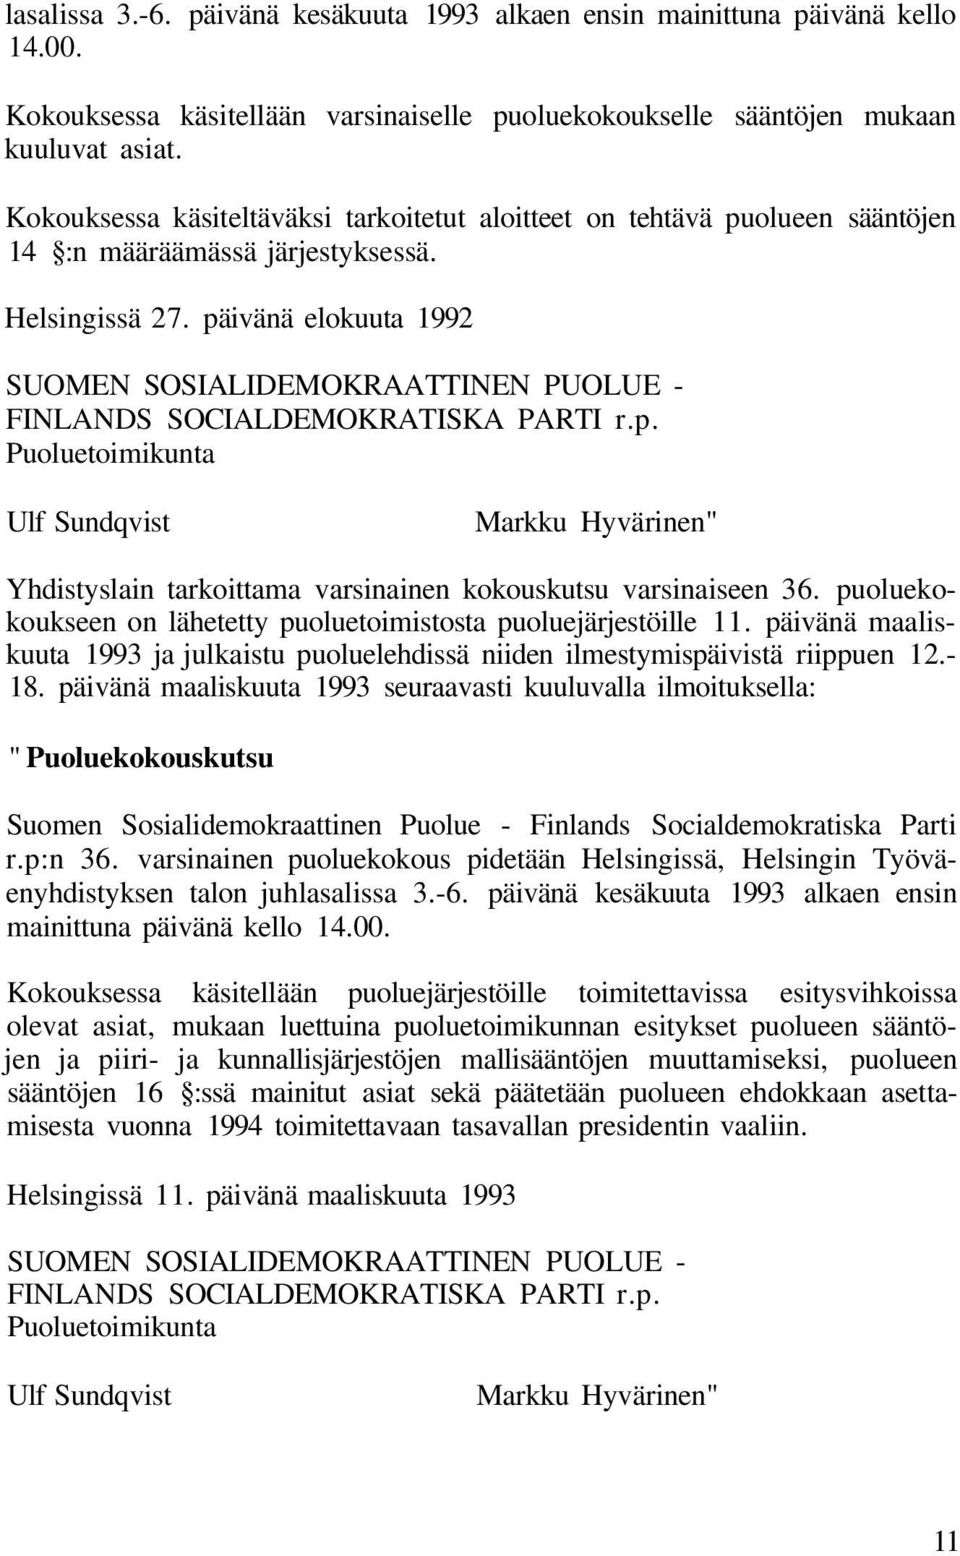 päivänä elokuuta 1992 SUOMEN SOSIALIDEMOKRAATTINEN PUOLUE - FINLANDS SOCIALDEMOKRATISKA PARTI r.p. Puoluetoimikunta Ulf Sundqvist Markku Hyvärinen" Yhdistyslain tarkoittama varsinainen kokouskutsu varsinaiseen 36.